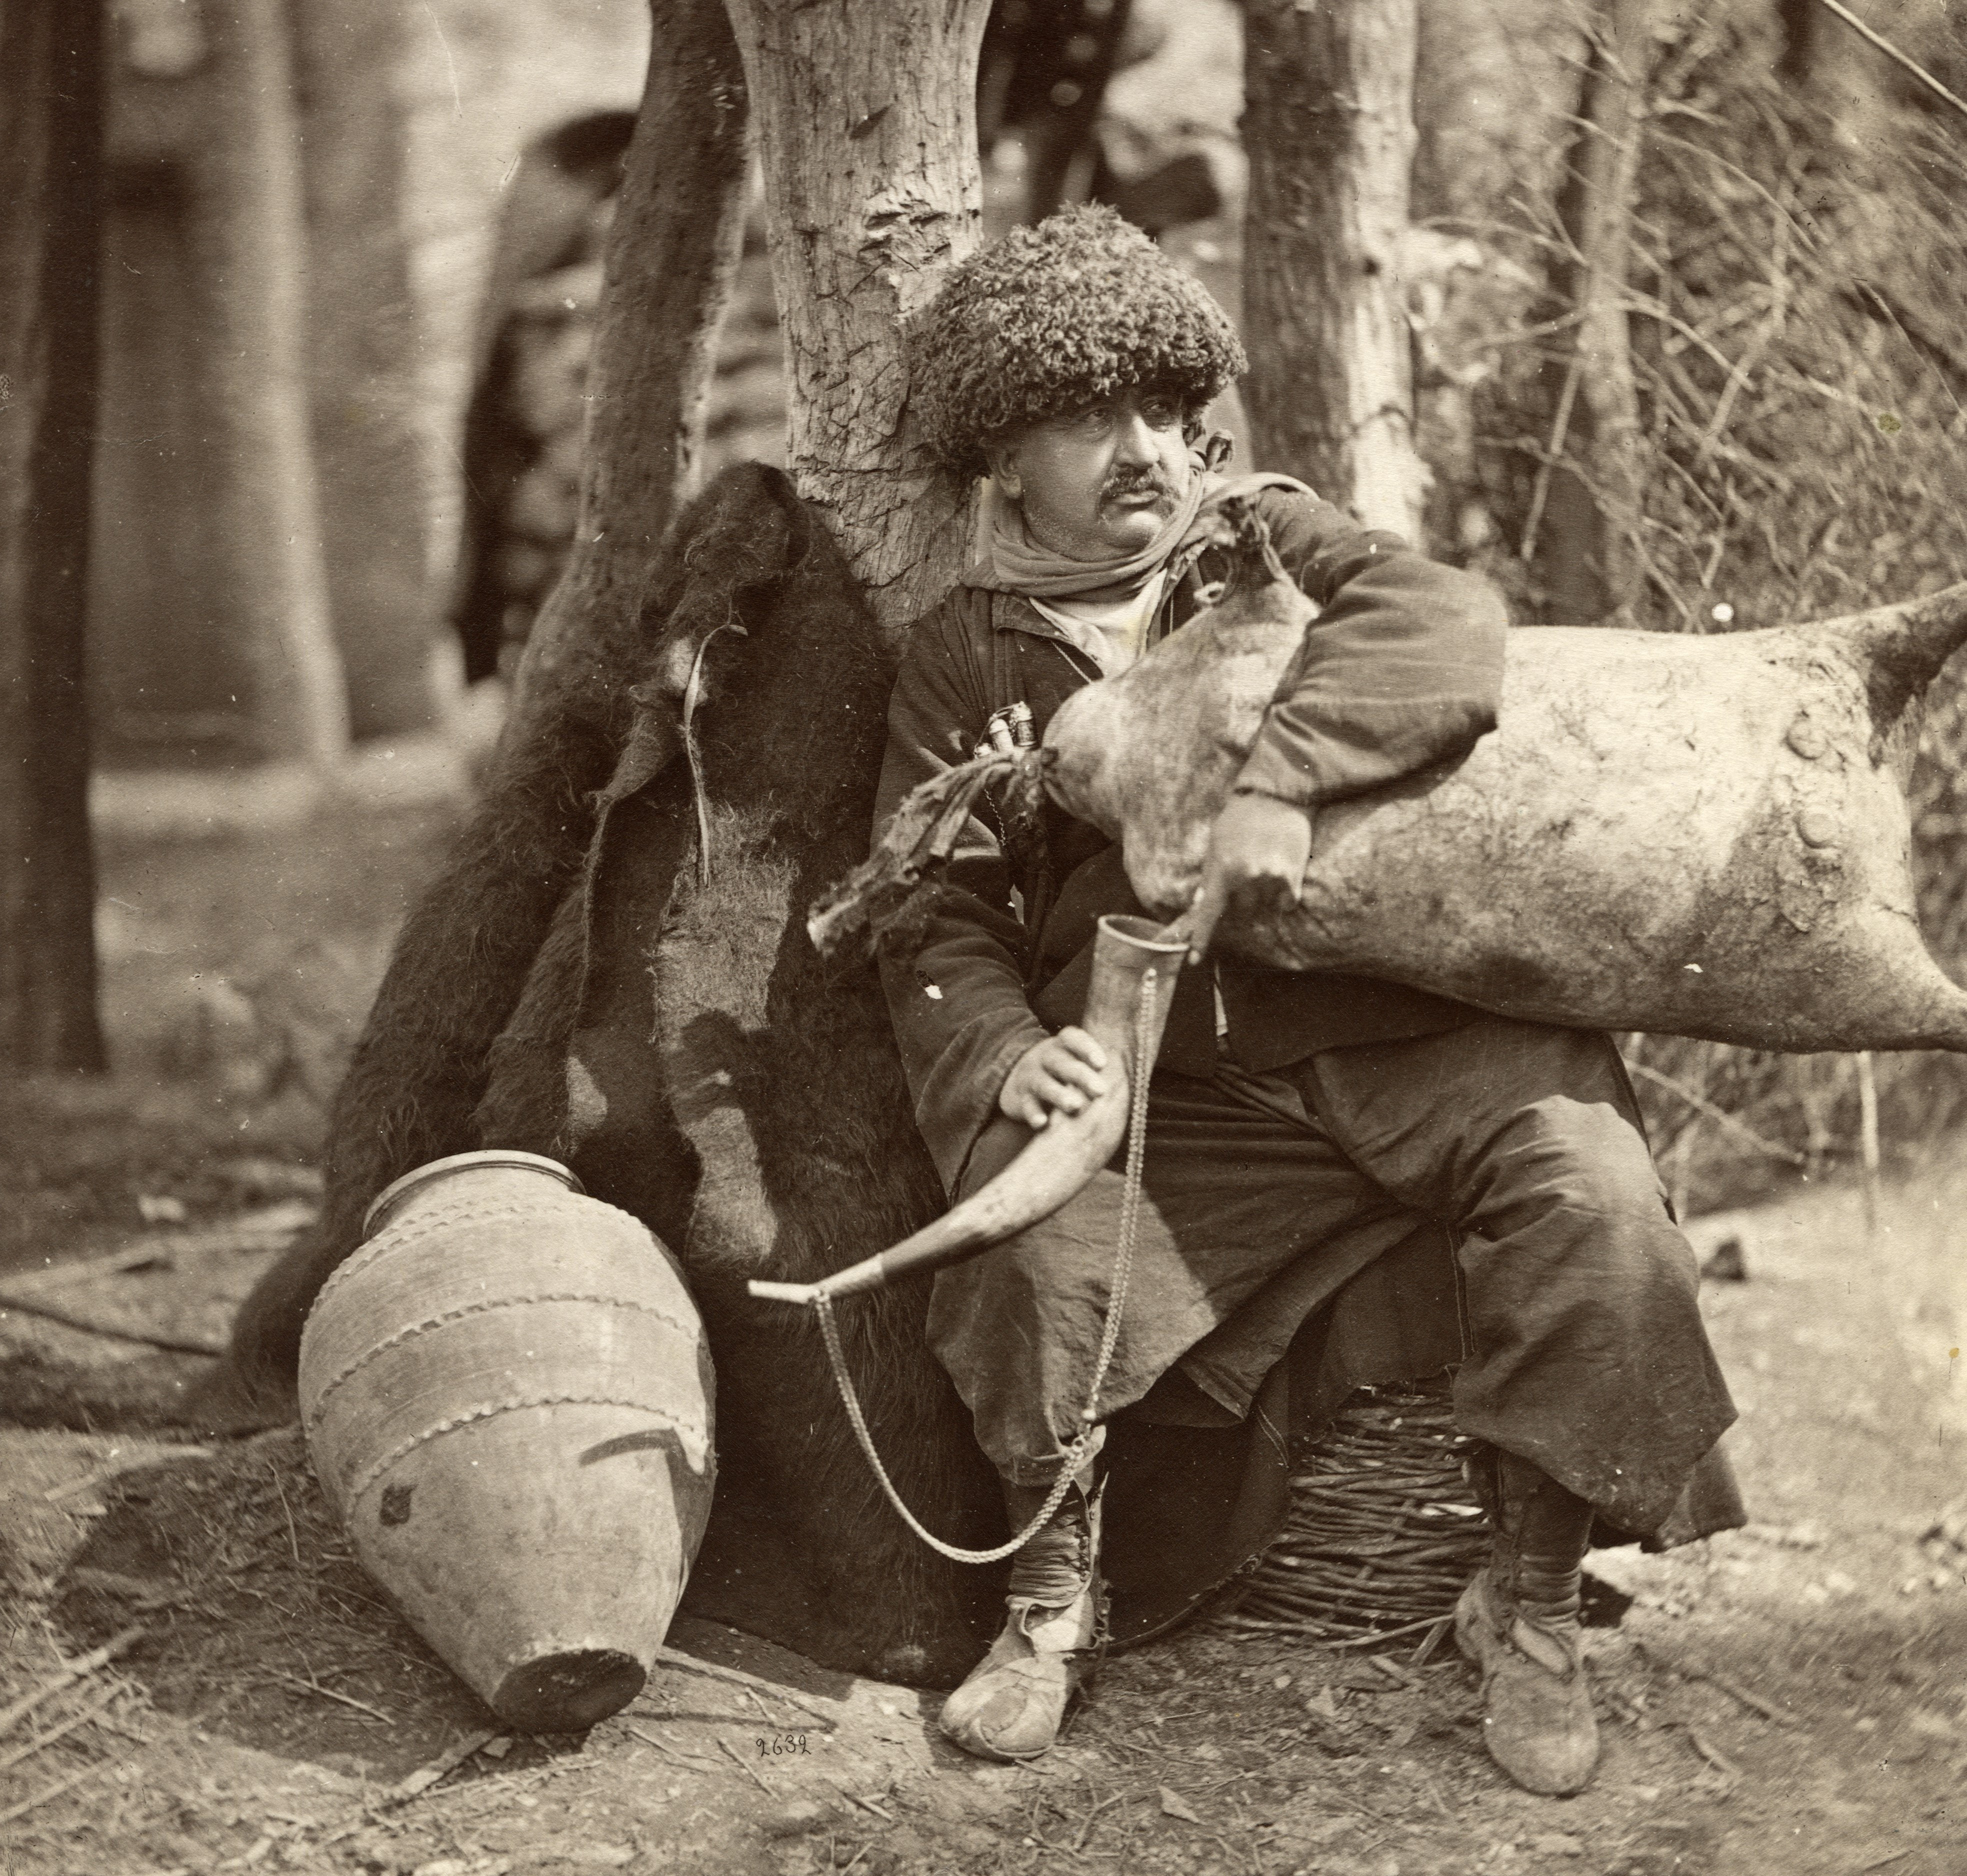 კახელი კაცი ტიკჭორითა და ყანწით <br>
ფოტო: დიმიტრი ერმაკოვი  <br>
[1870-1910]  <br>
A Kakhetian man with a small wineskin and a horn <br>
Photo: Dmitry Ermakov  <br>
[1870-1910]